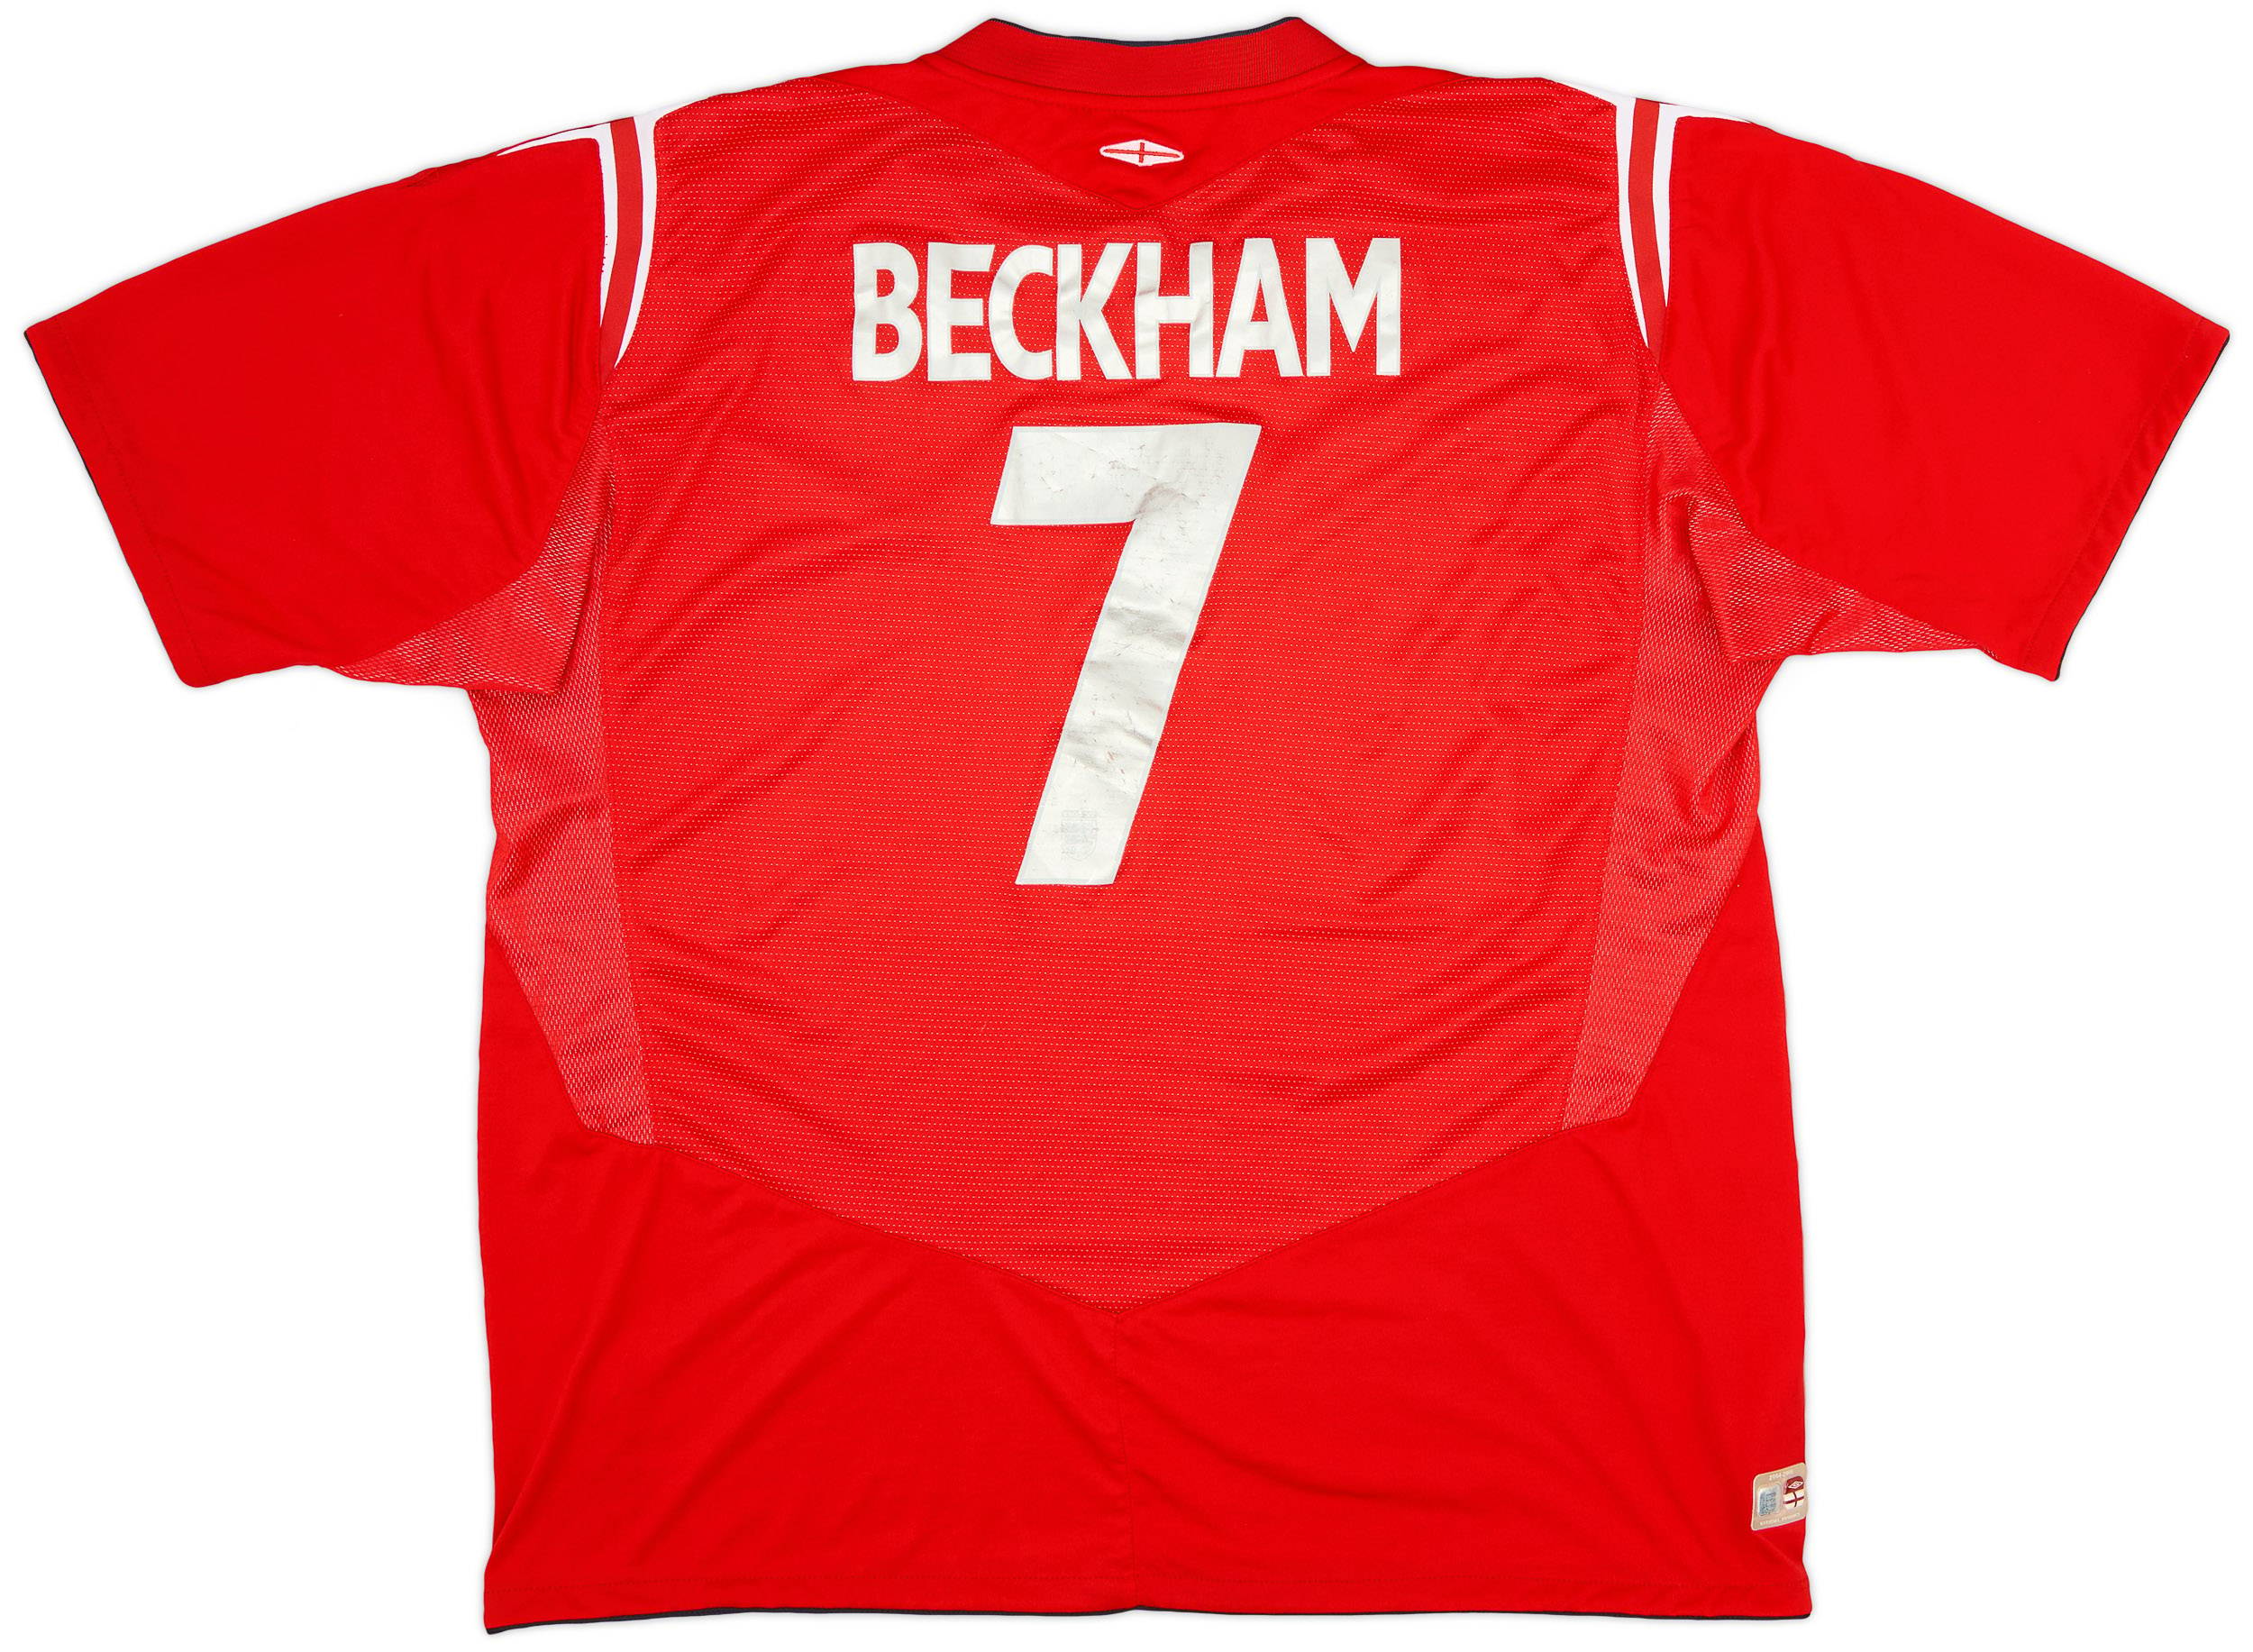 2004-06 England Away Shirt Beckham #7 - 6/10 - (XL)